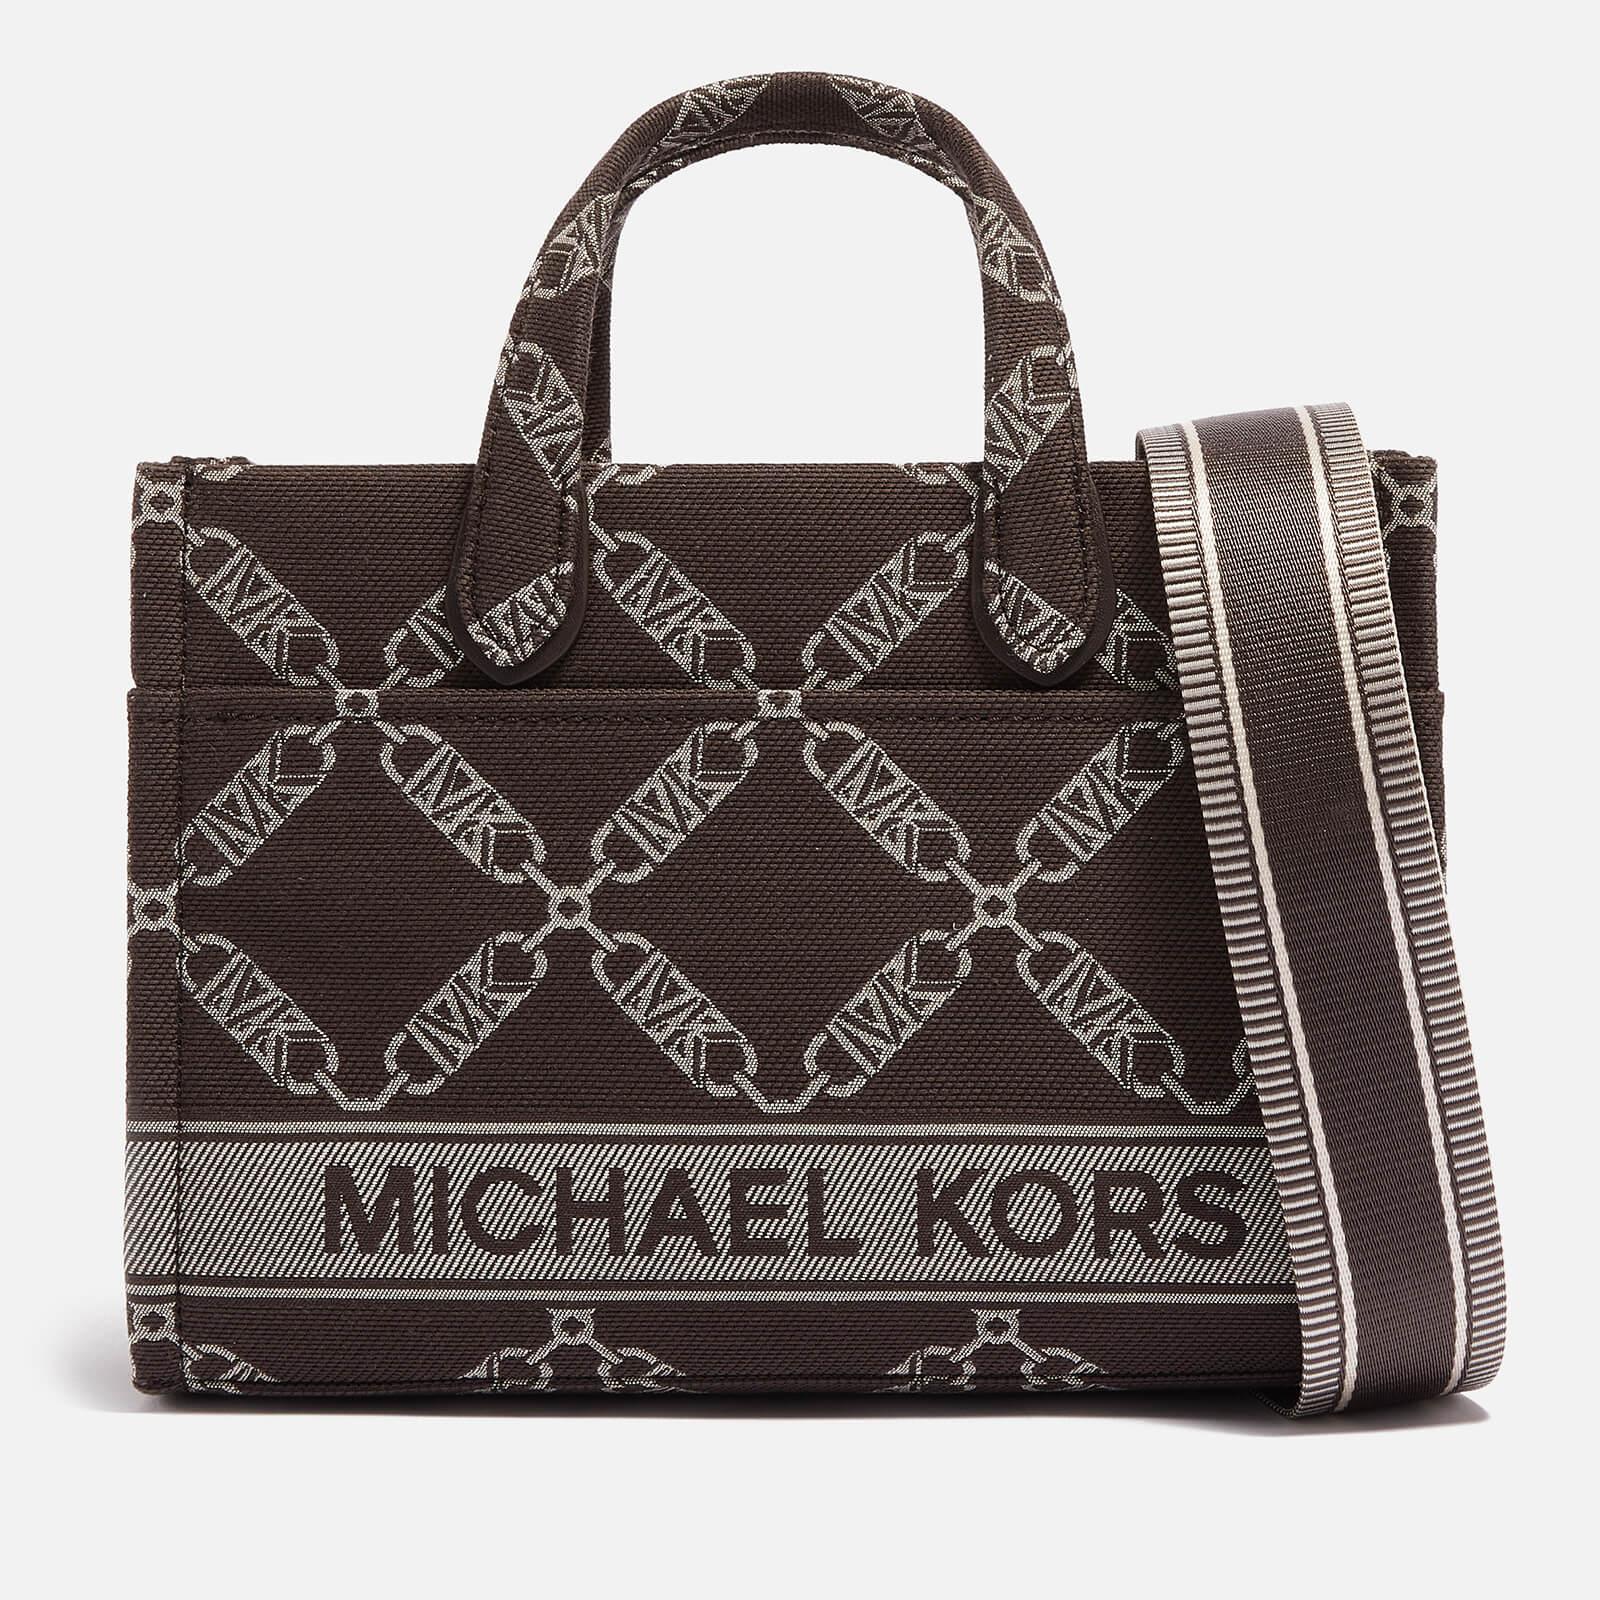 Handbag Comparison: Michael Kors and Louis Vuitton 